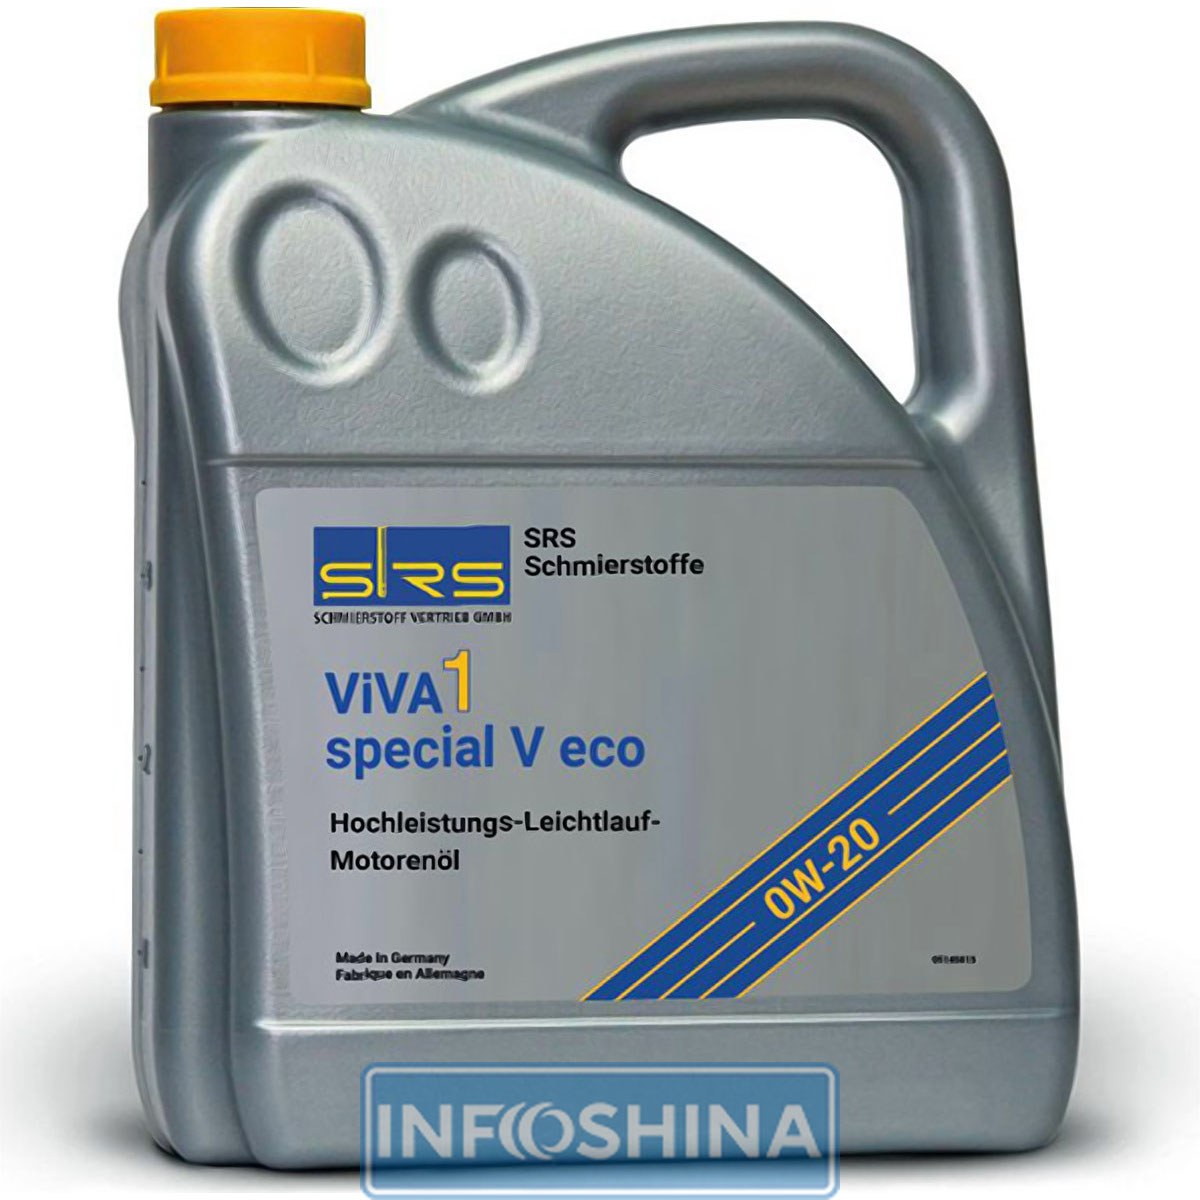 Купить масло SRS ViVA 1 special V eco 0W-20 (5л)